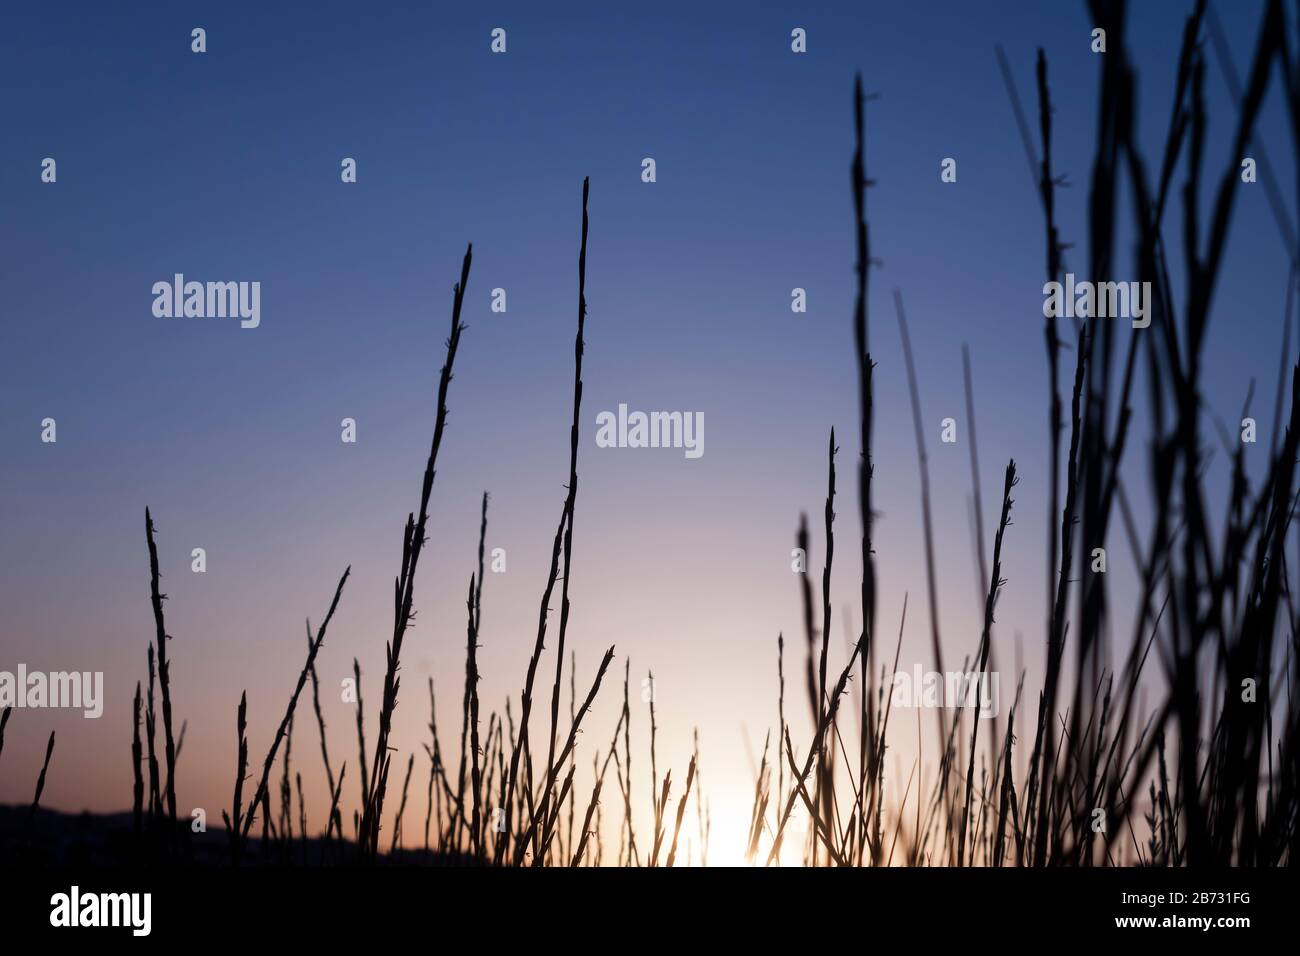 Dünengras-Silhouette bei Sonnenuntergang. Blauer Stundenhintergrund Stockfoto